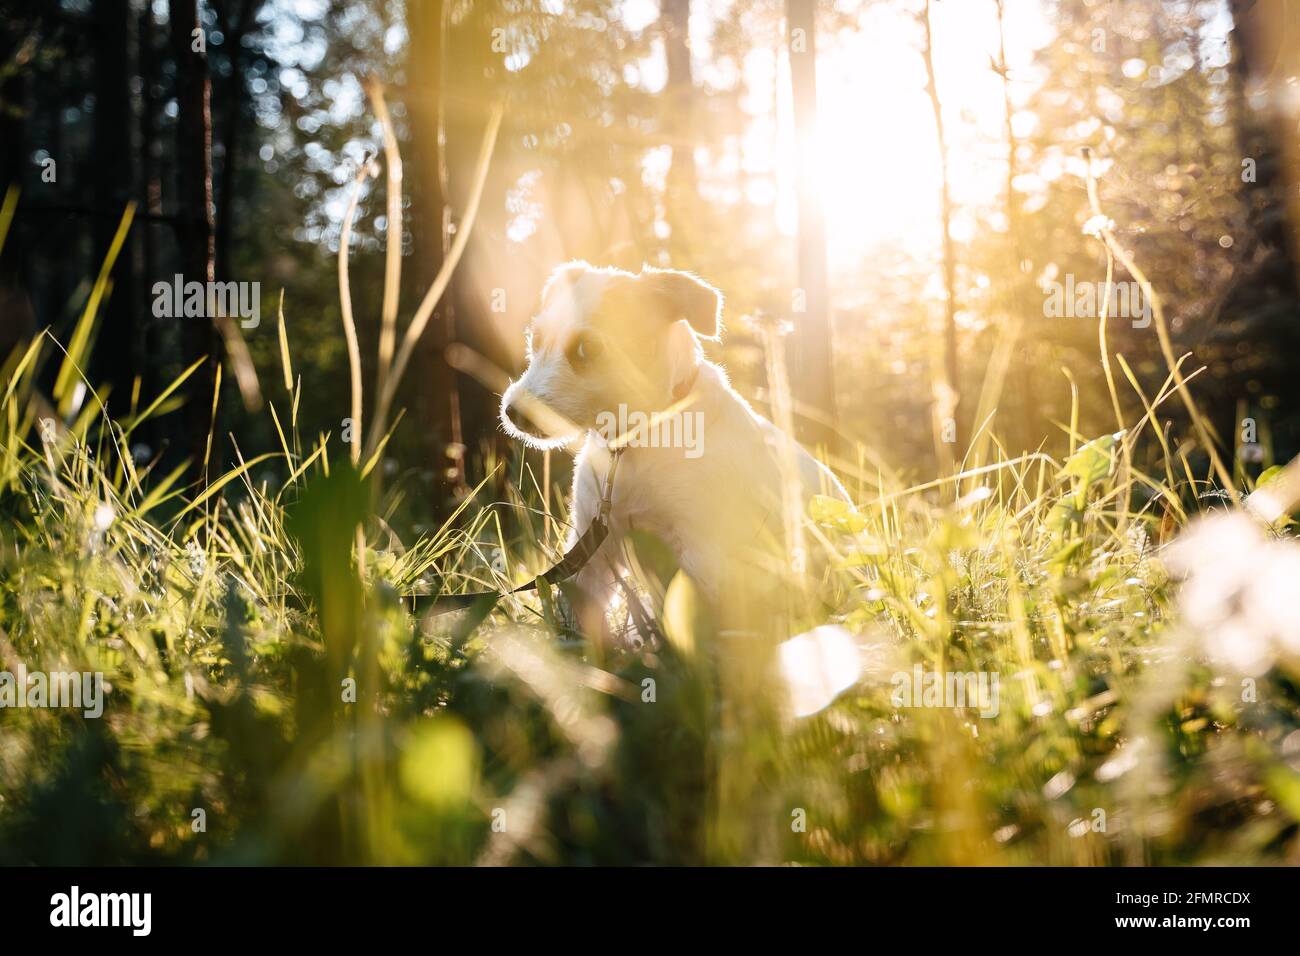 Le Jack russell, chien de race, repose sur l'herbe verte au soleil couchant. Banque D'Images